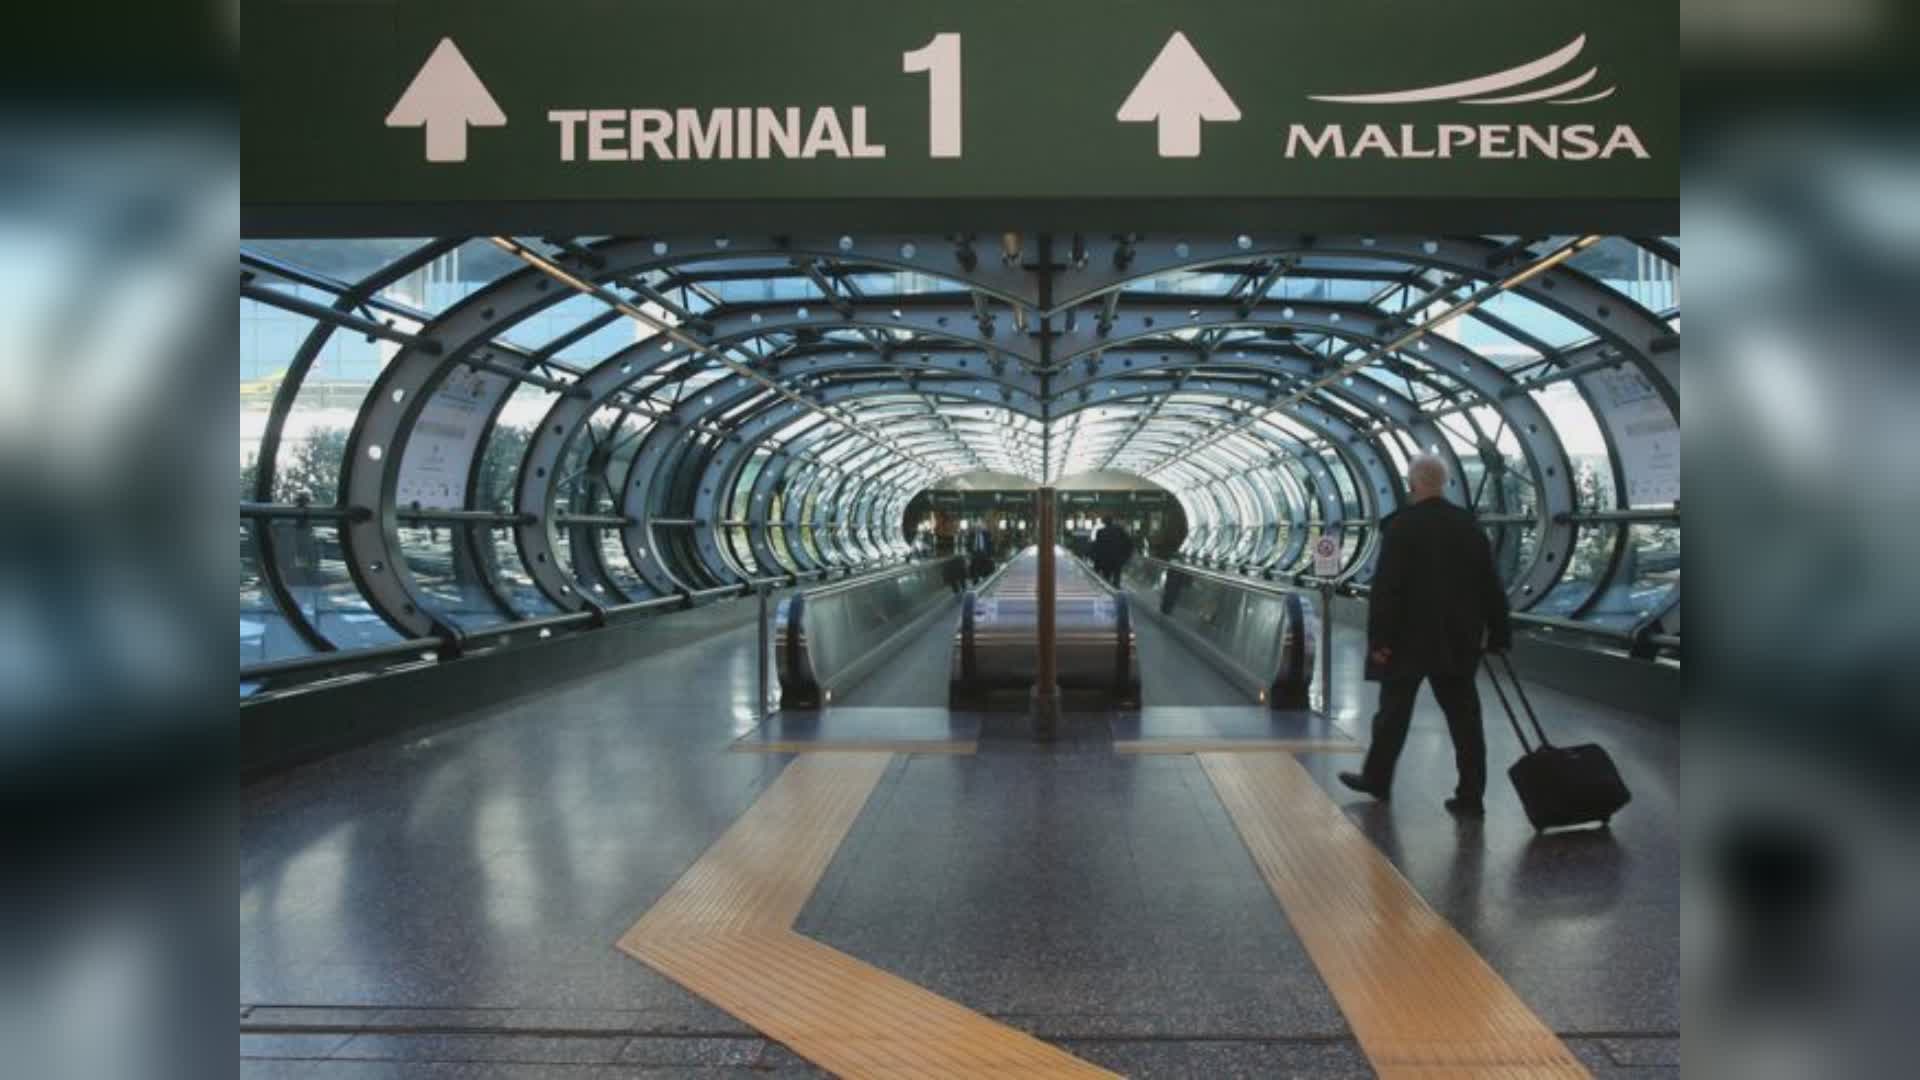 Aeroporto Malpensa, il presidente della Lombardia Fontana: "Giusta la richiesta di ampliamento dell’hub"